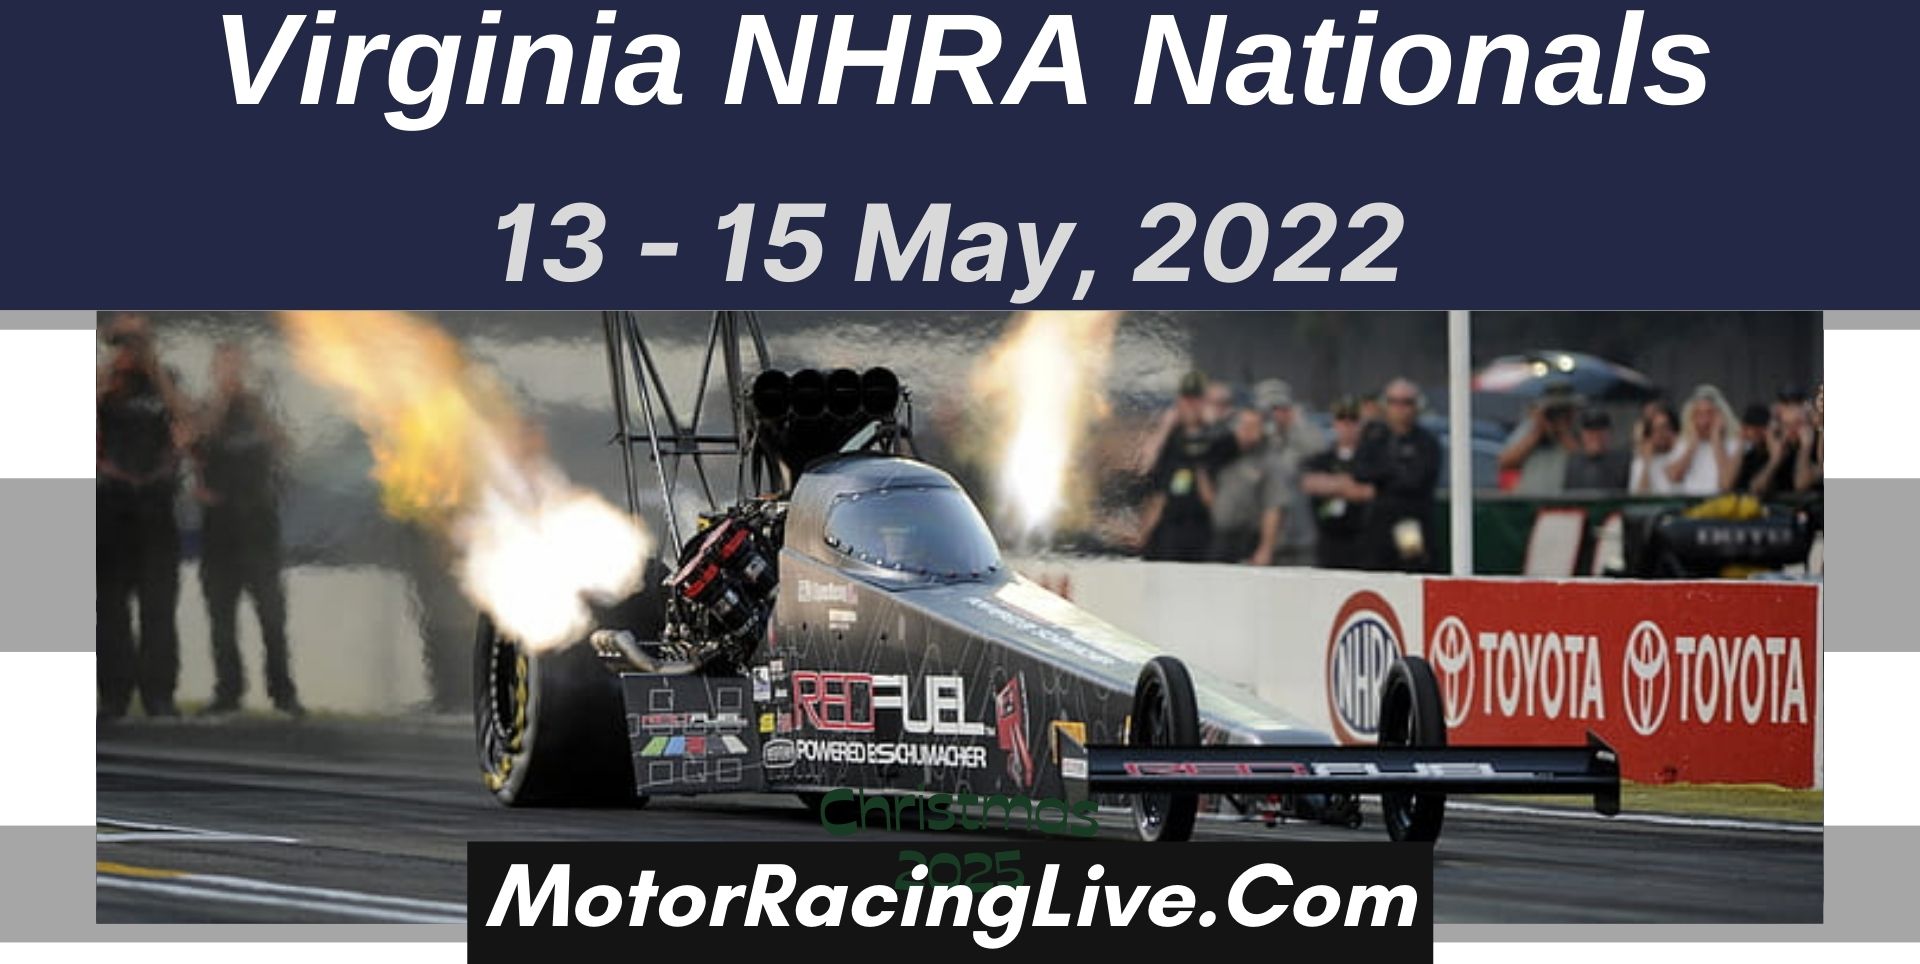 Virginia NHRA Nationals 2022 Live Stream